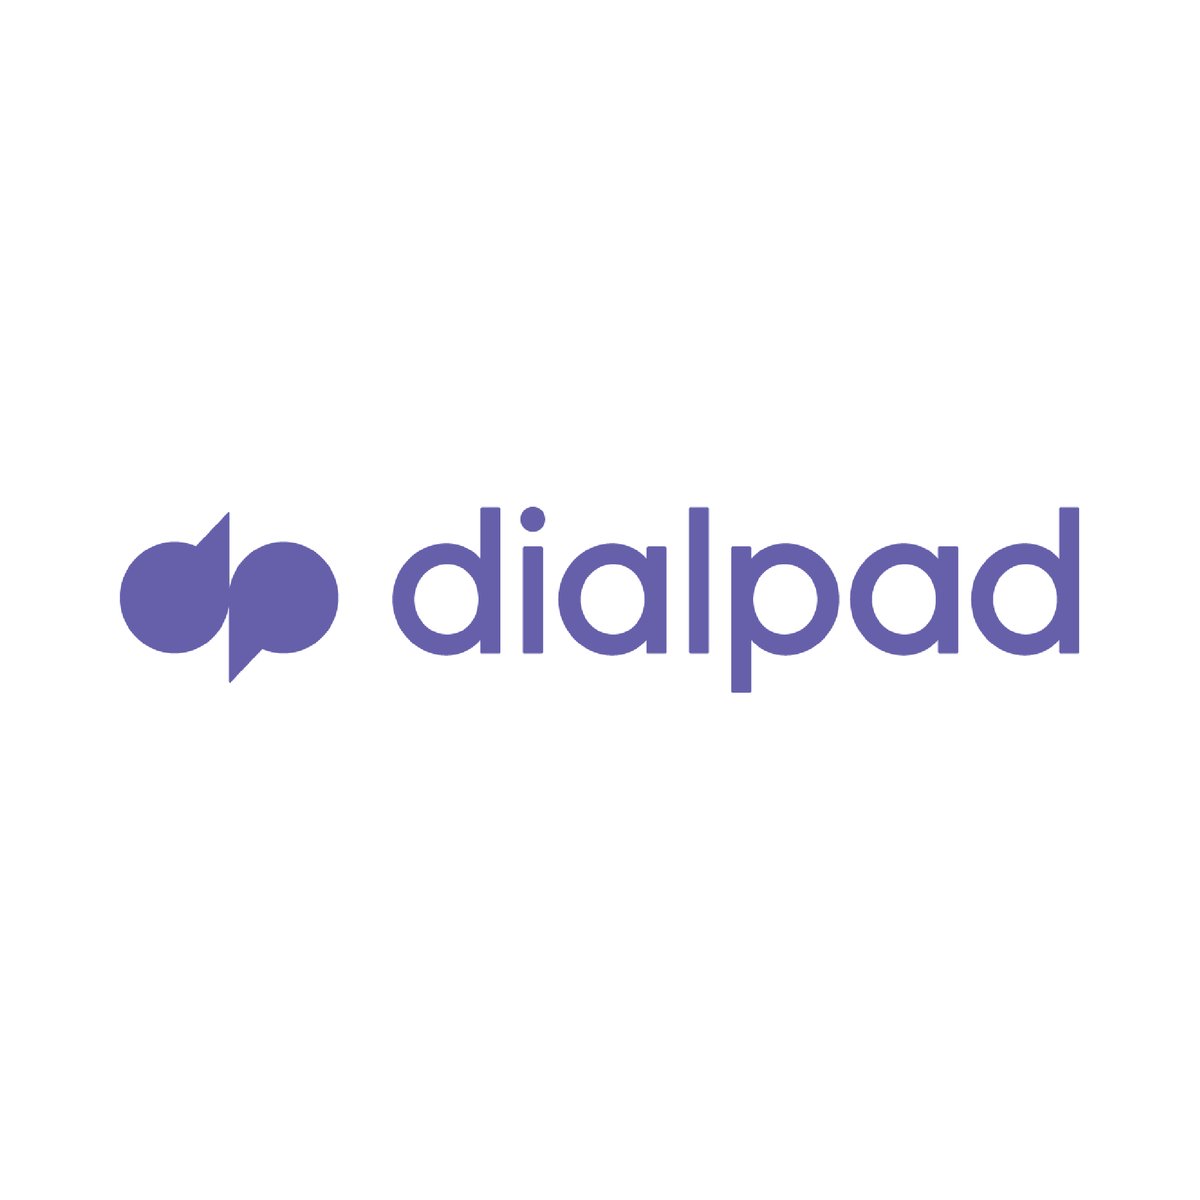 Dialpad_Gold-01